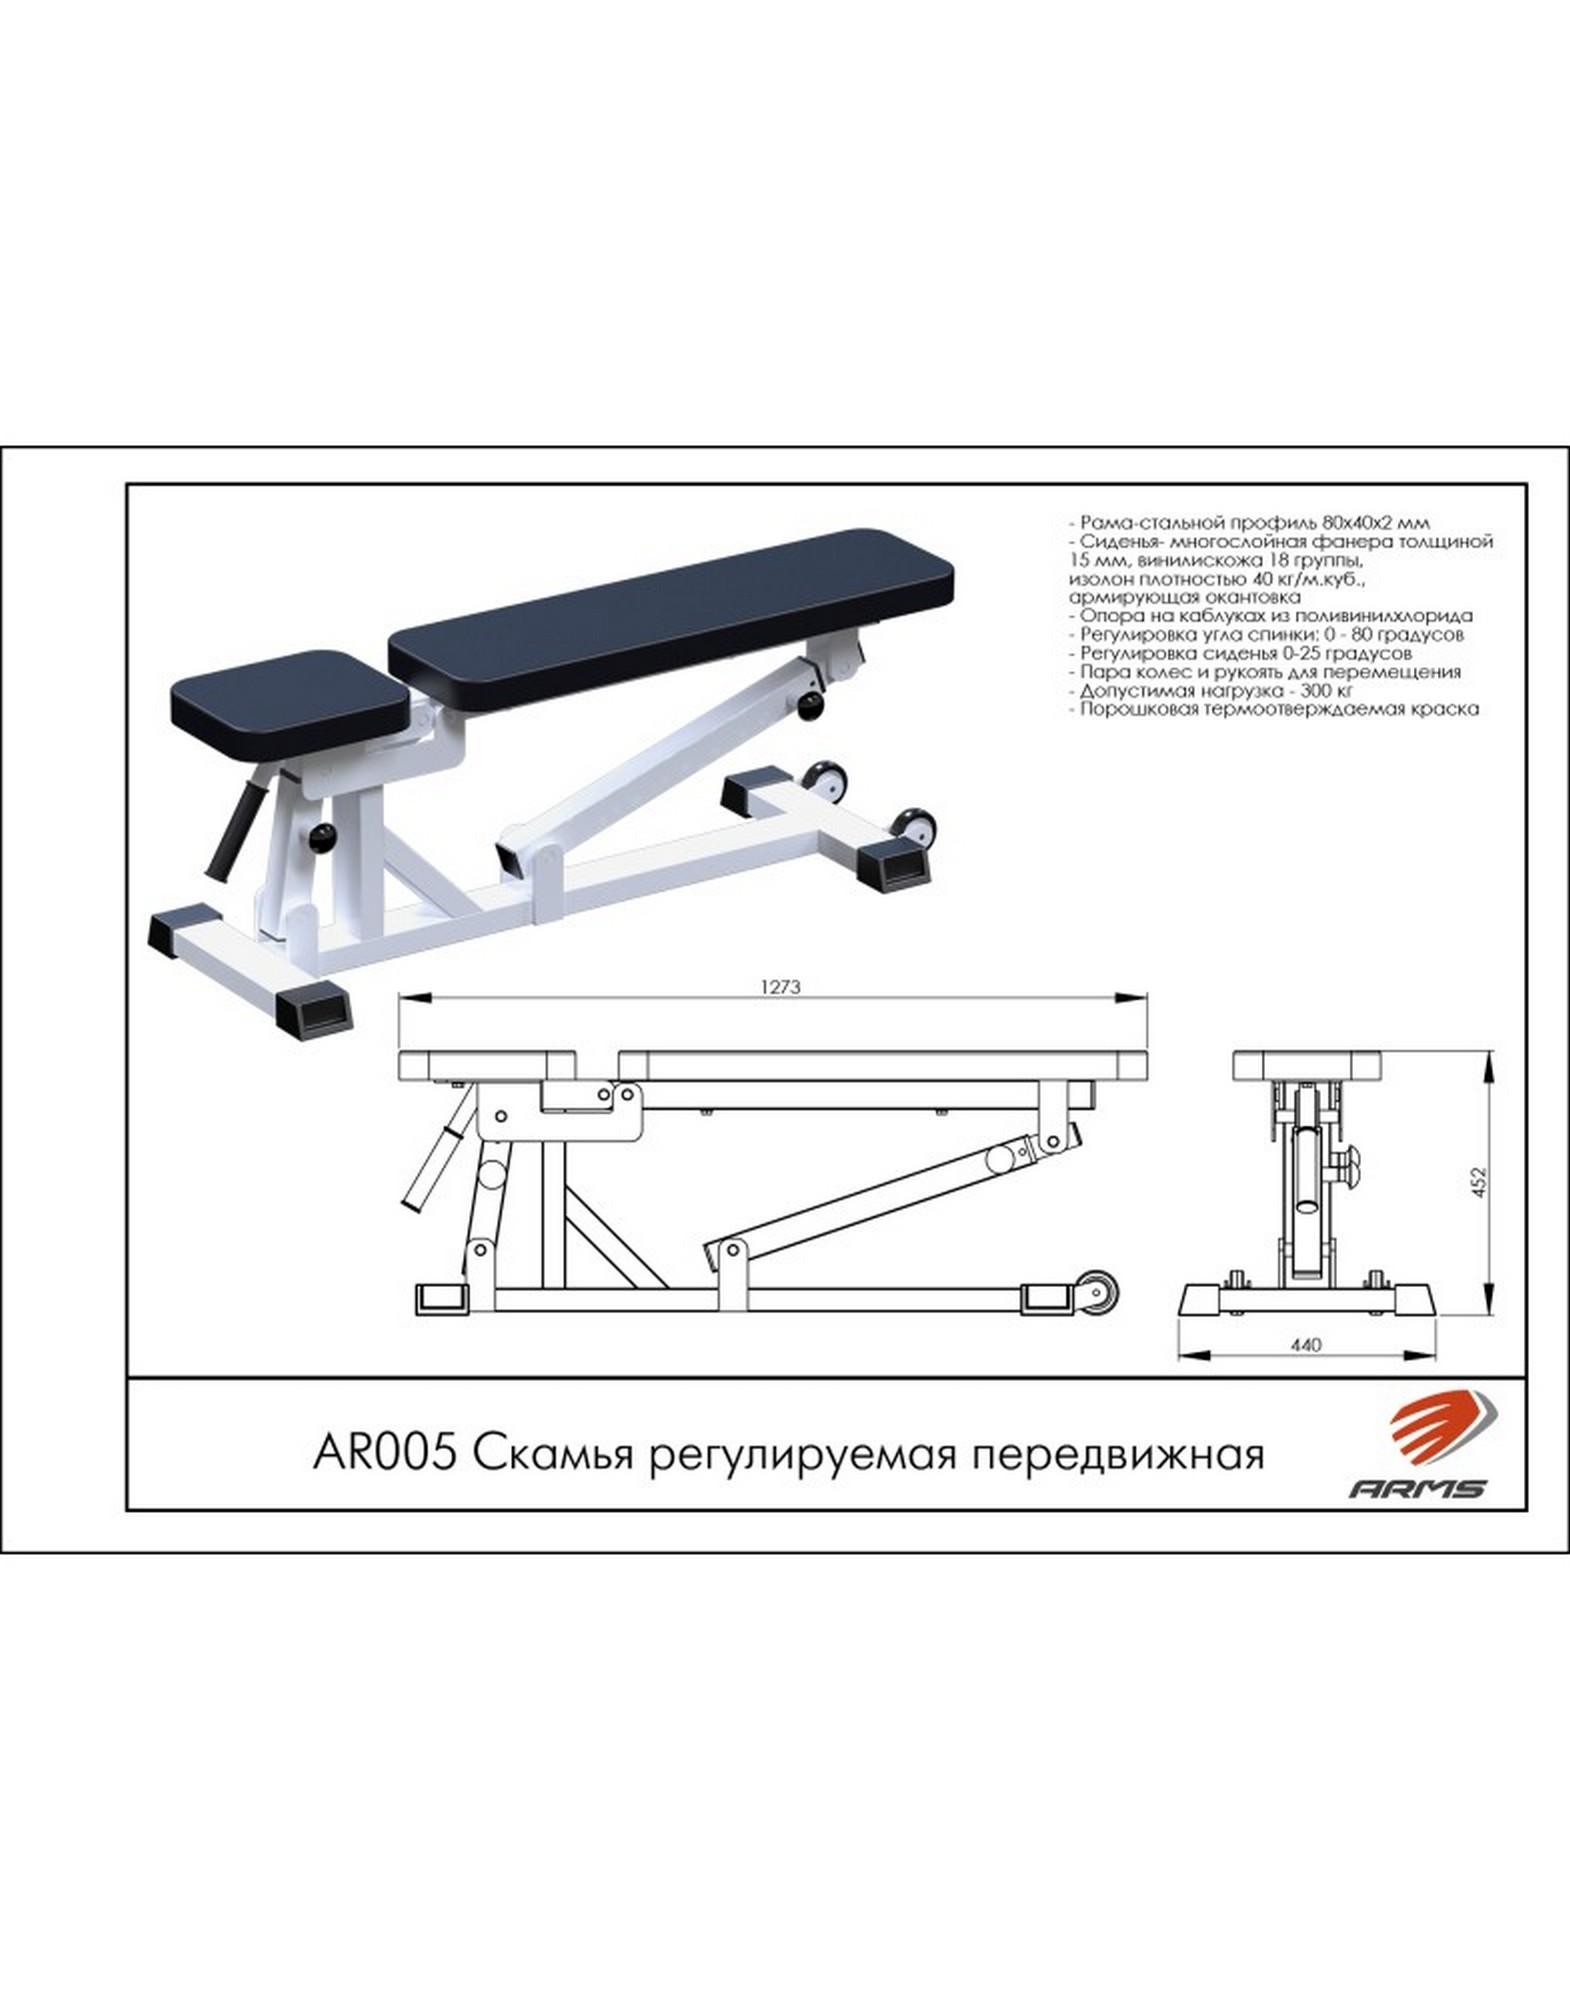 Скамья регулируемая передвижная ARMS AR005 1570_2000